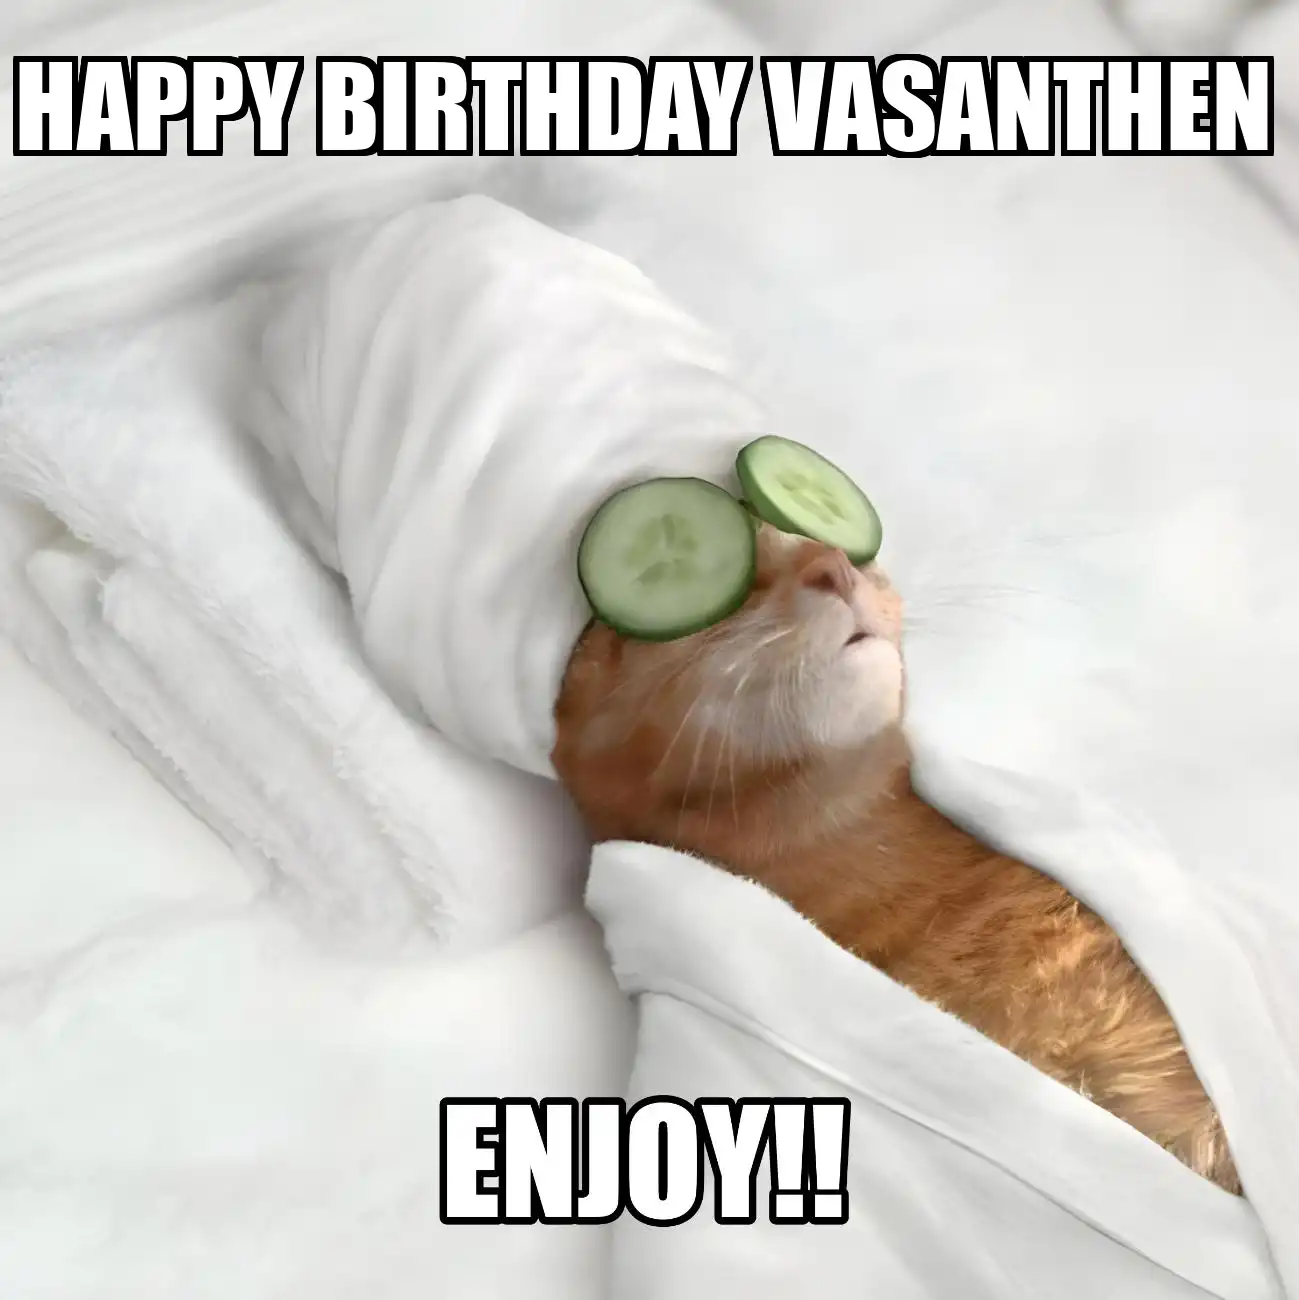 Happy Birthday Vasanthen Enjoy Cat Meme